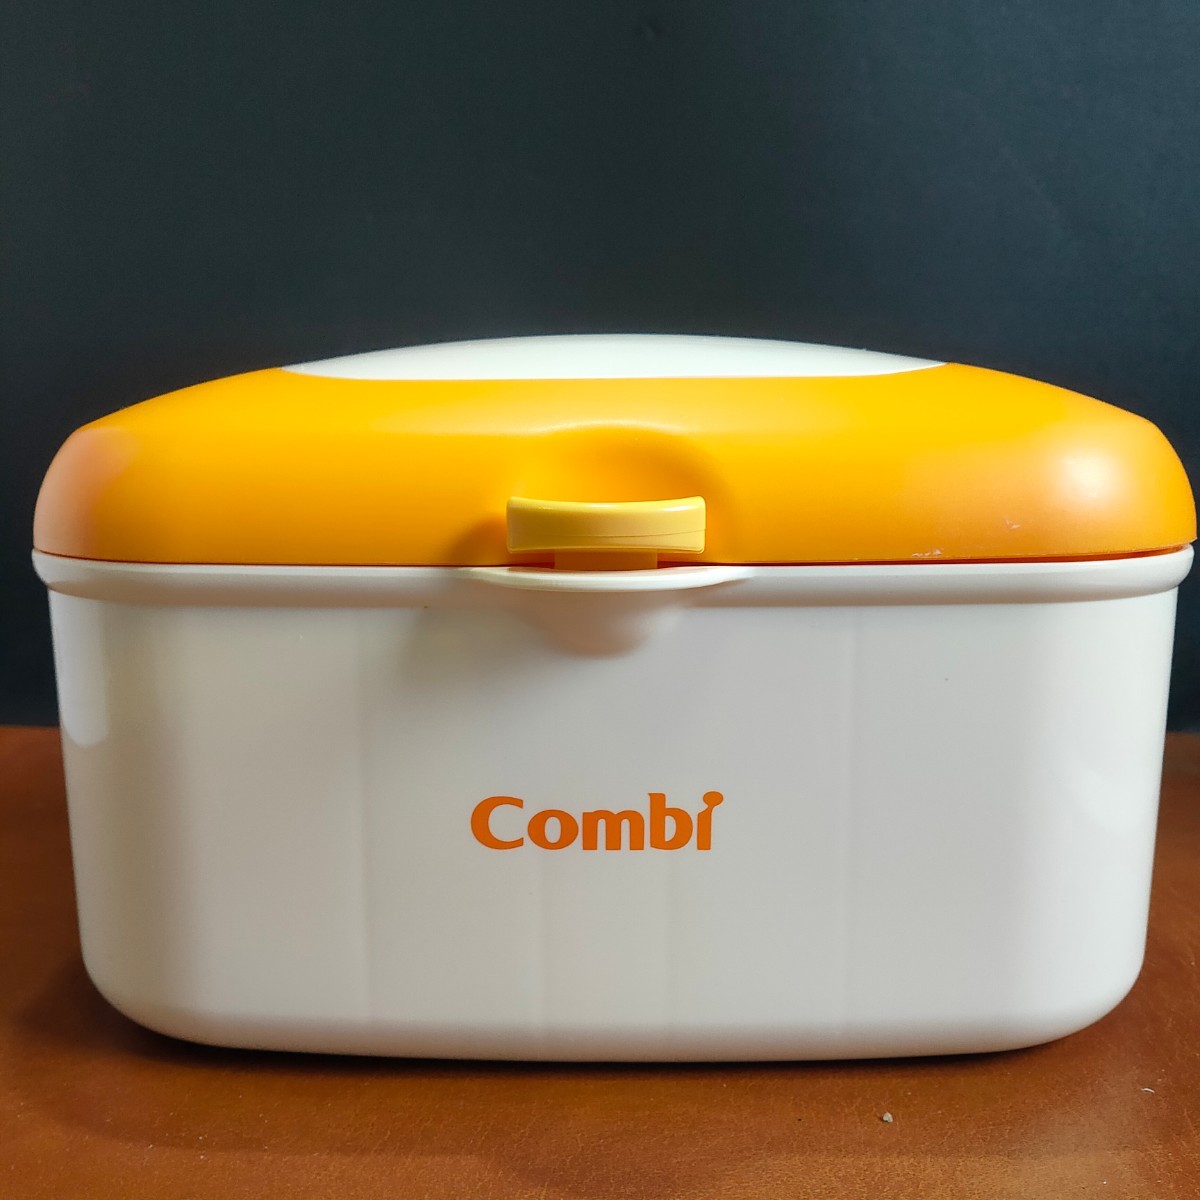 [ б/у товар ]Combi комбинированный Quick утеплитель HU влажные салфетки .. поэтому контейнер свежий orange товары для малышей [ труба A758-2402]